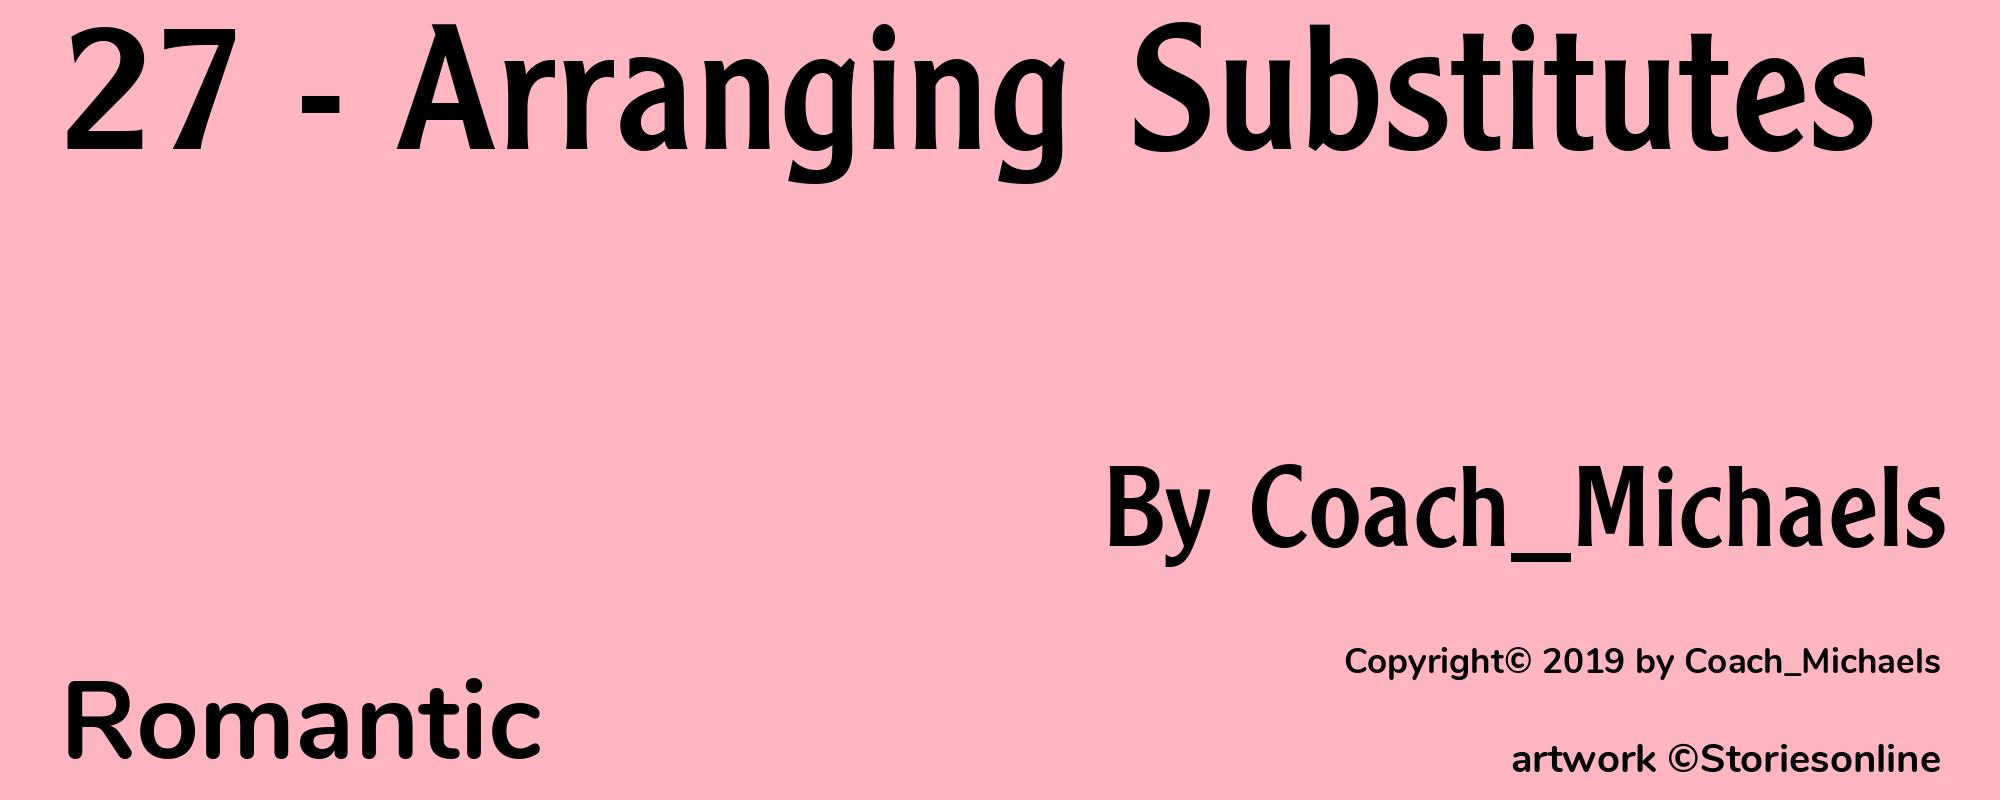 27 - Arranging Substitutes - Cover